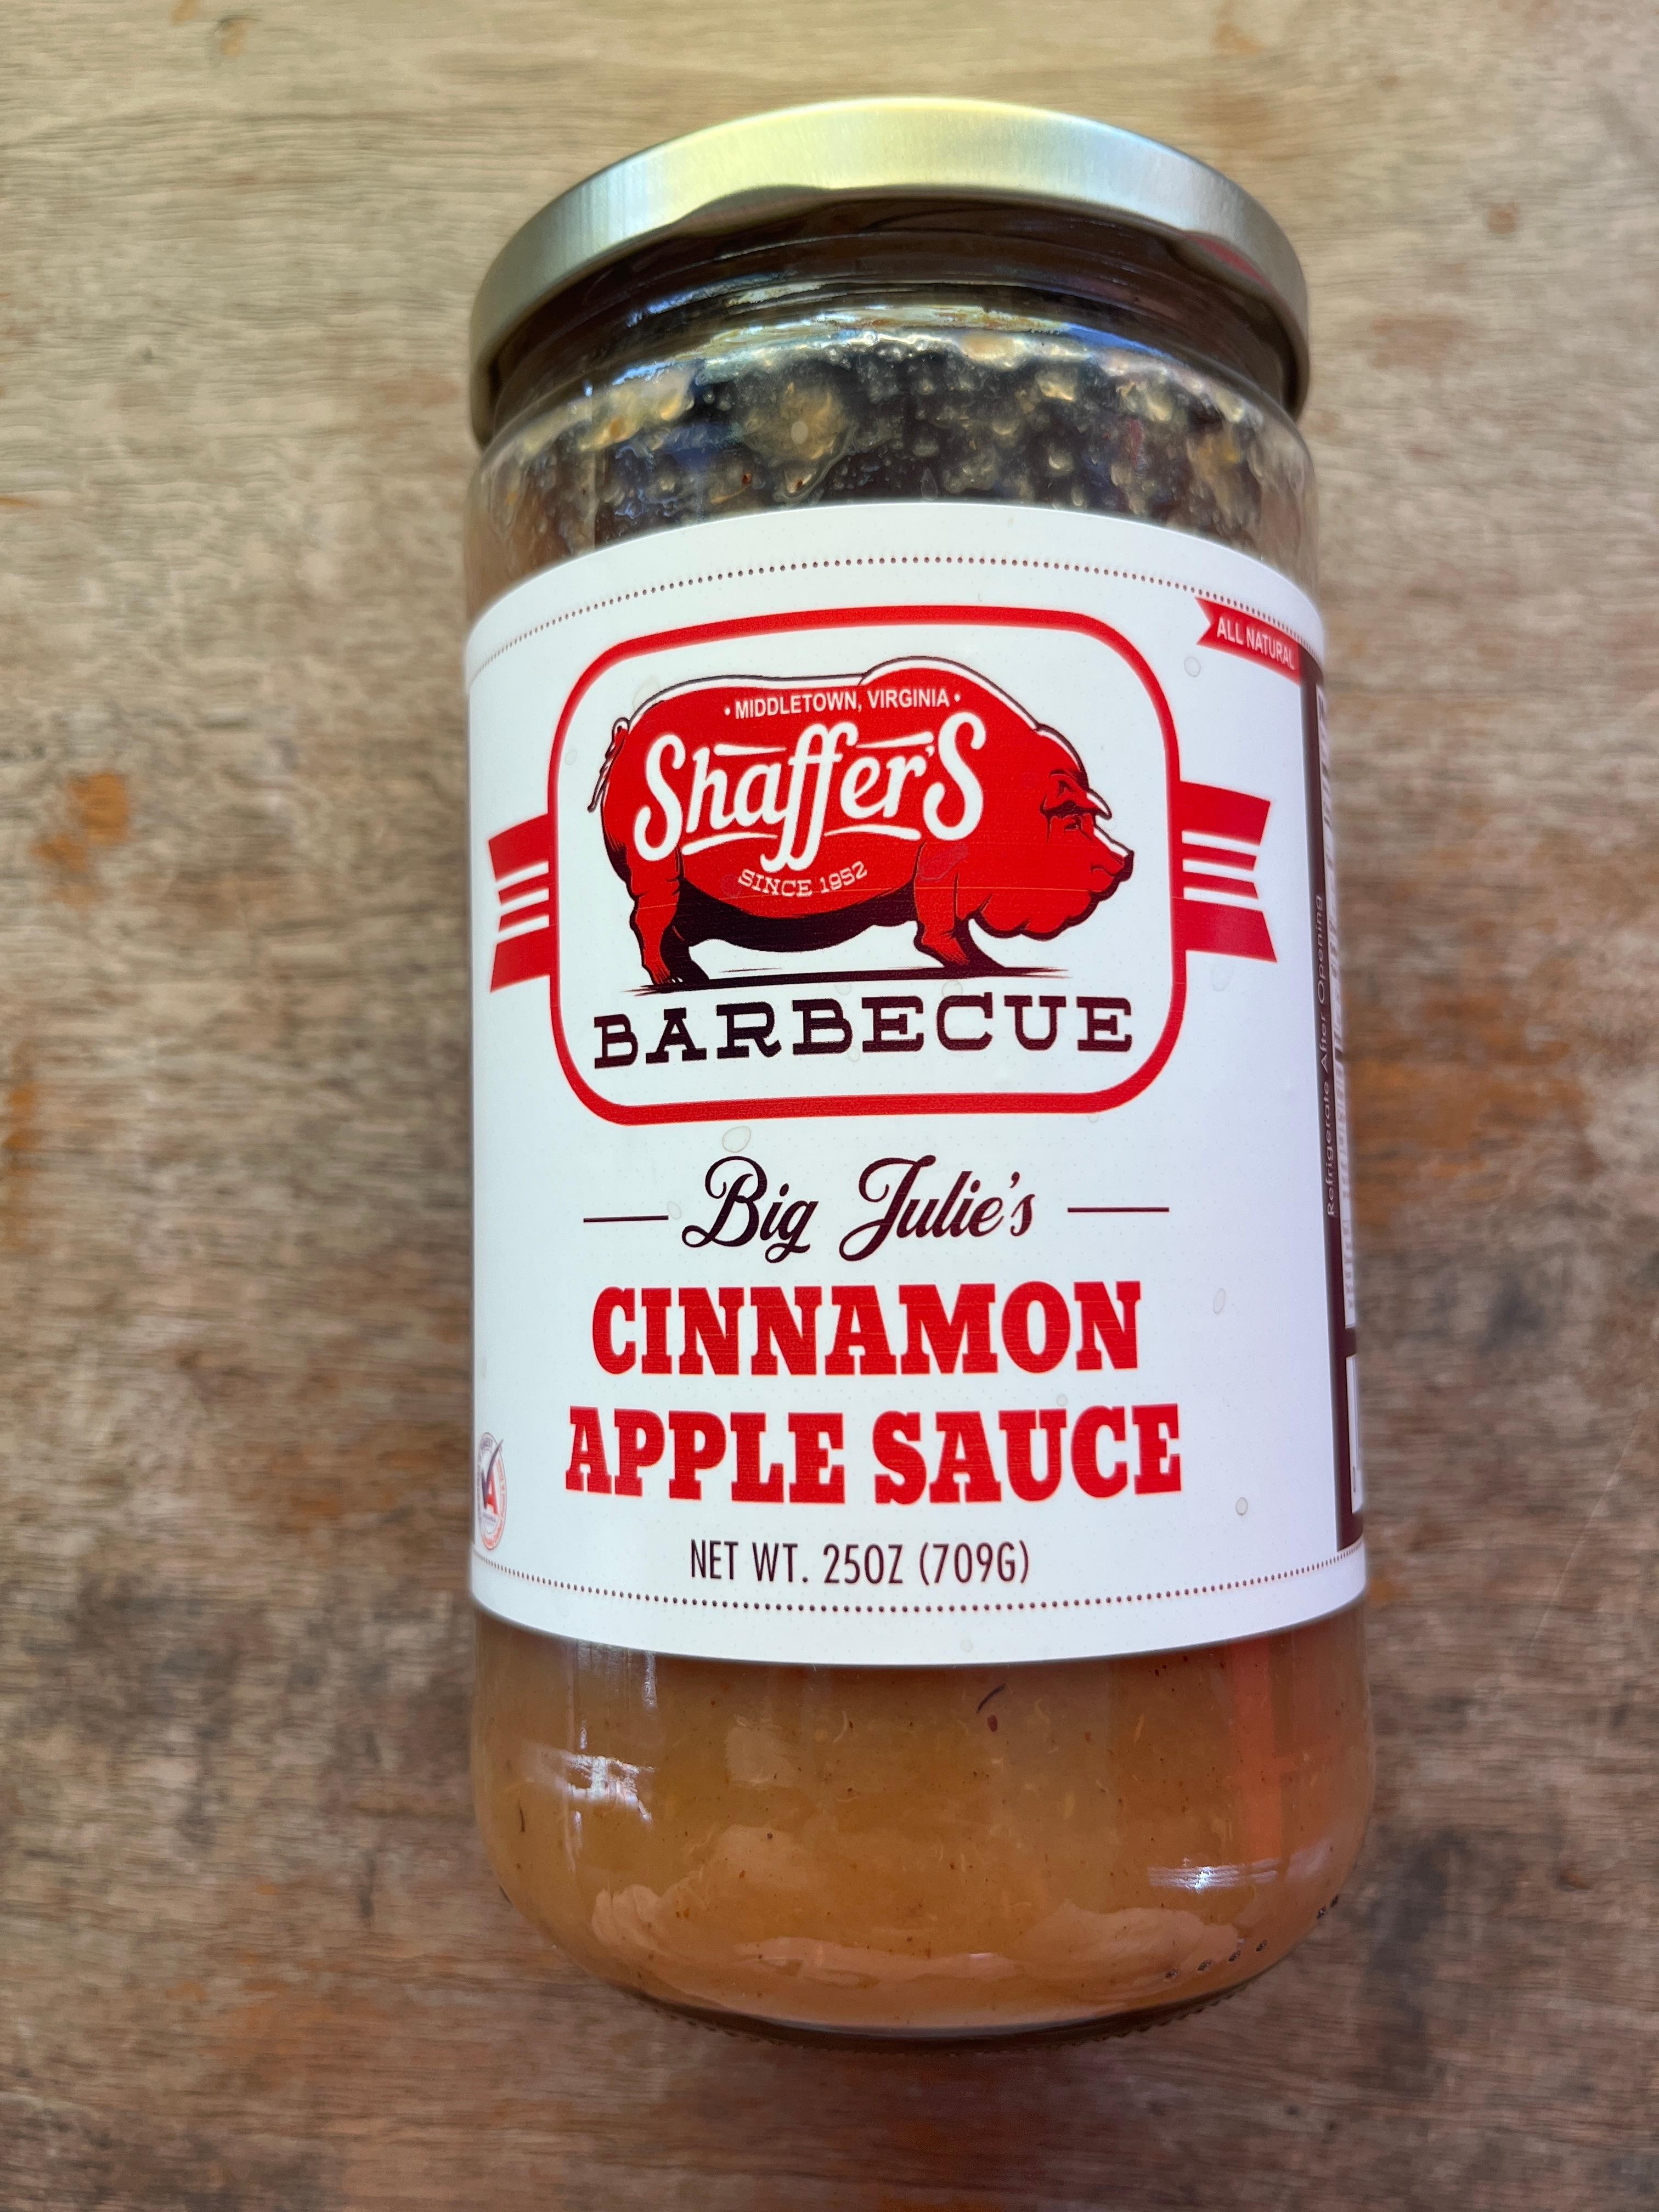 Big Julie’s Cinnamon Apple Sauce